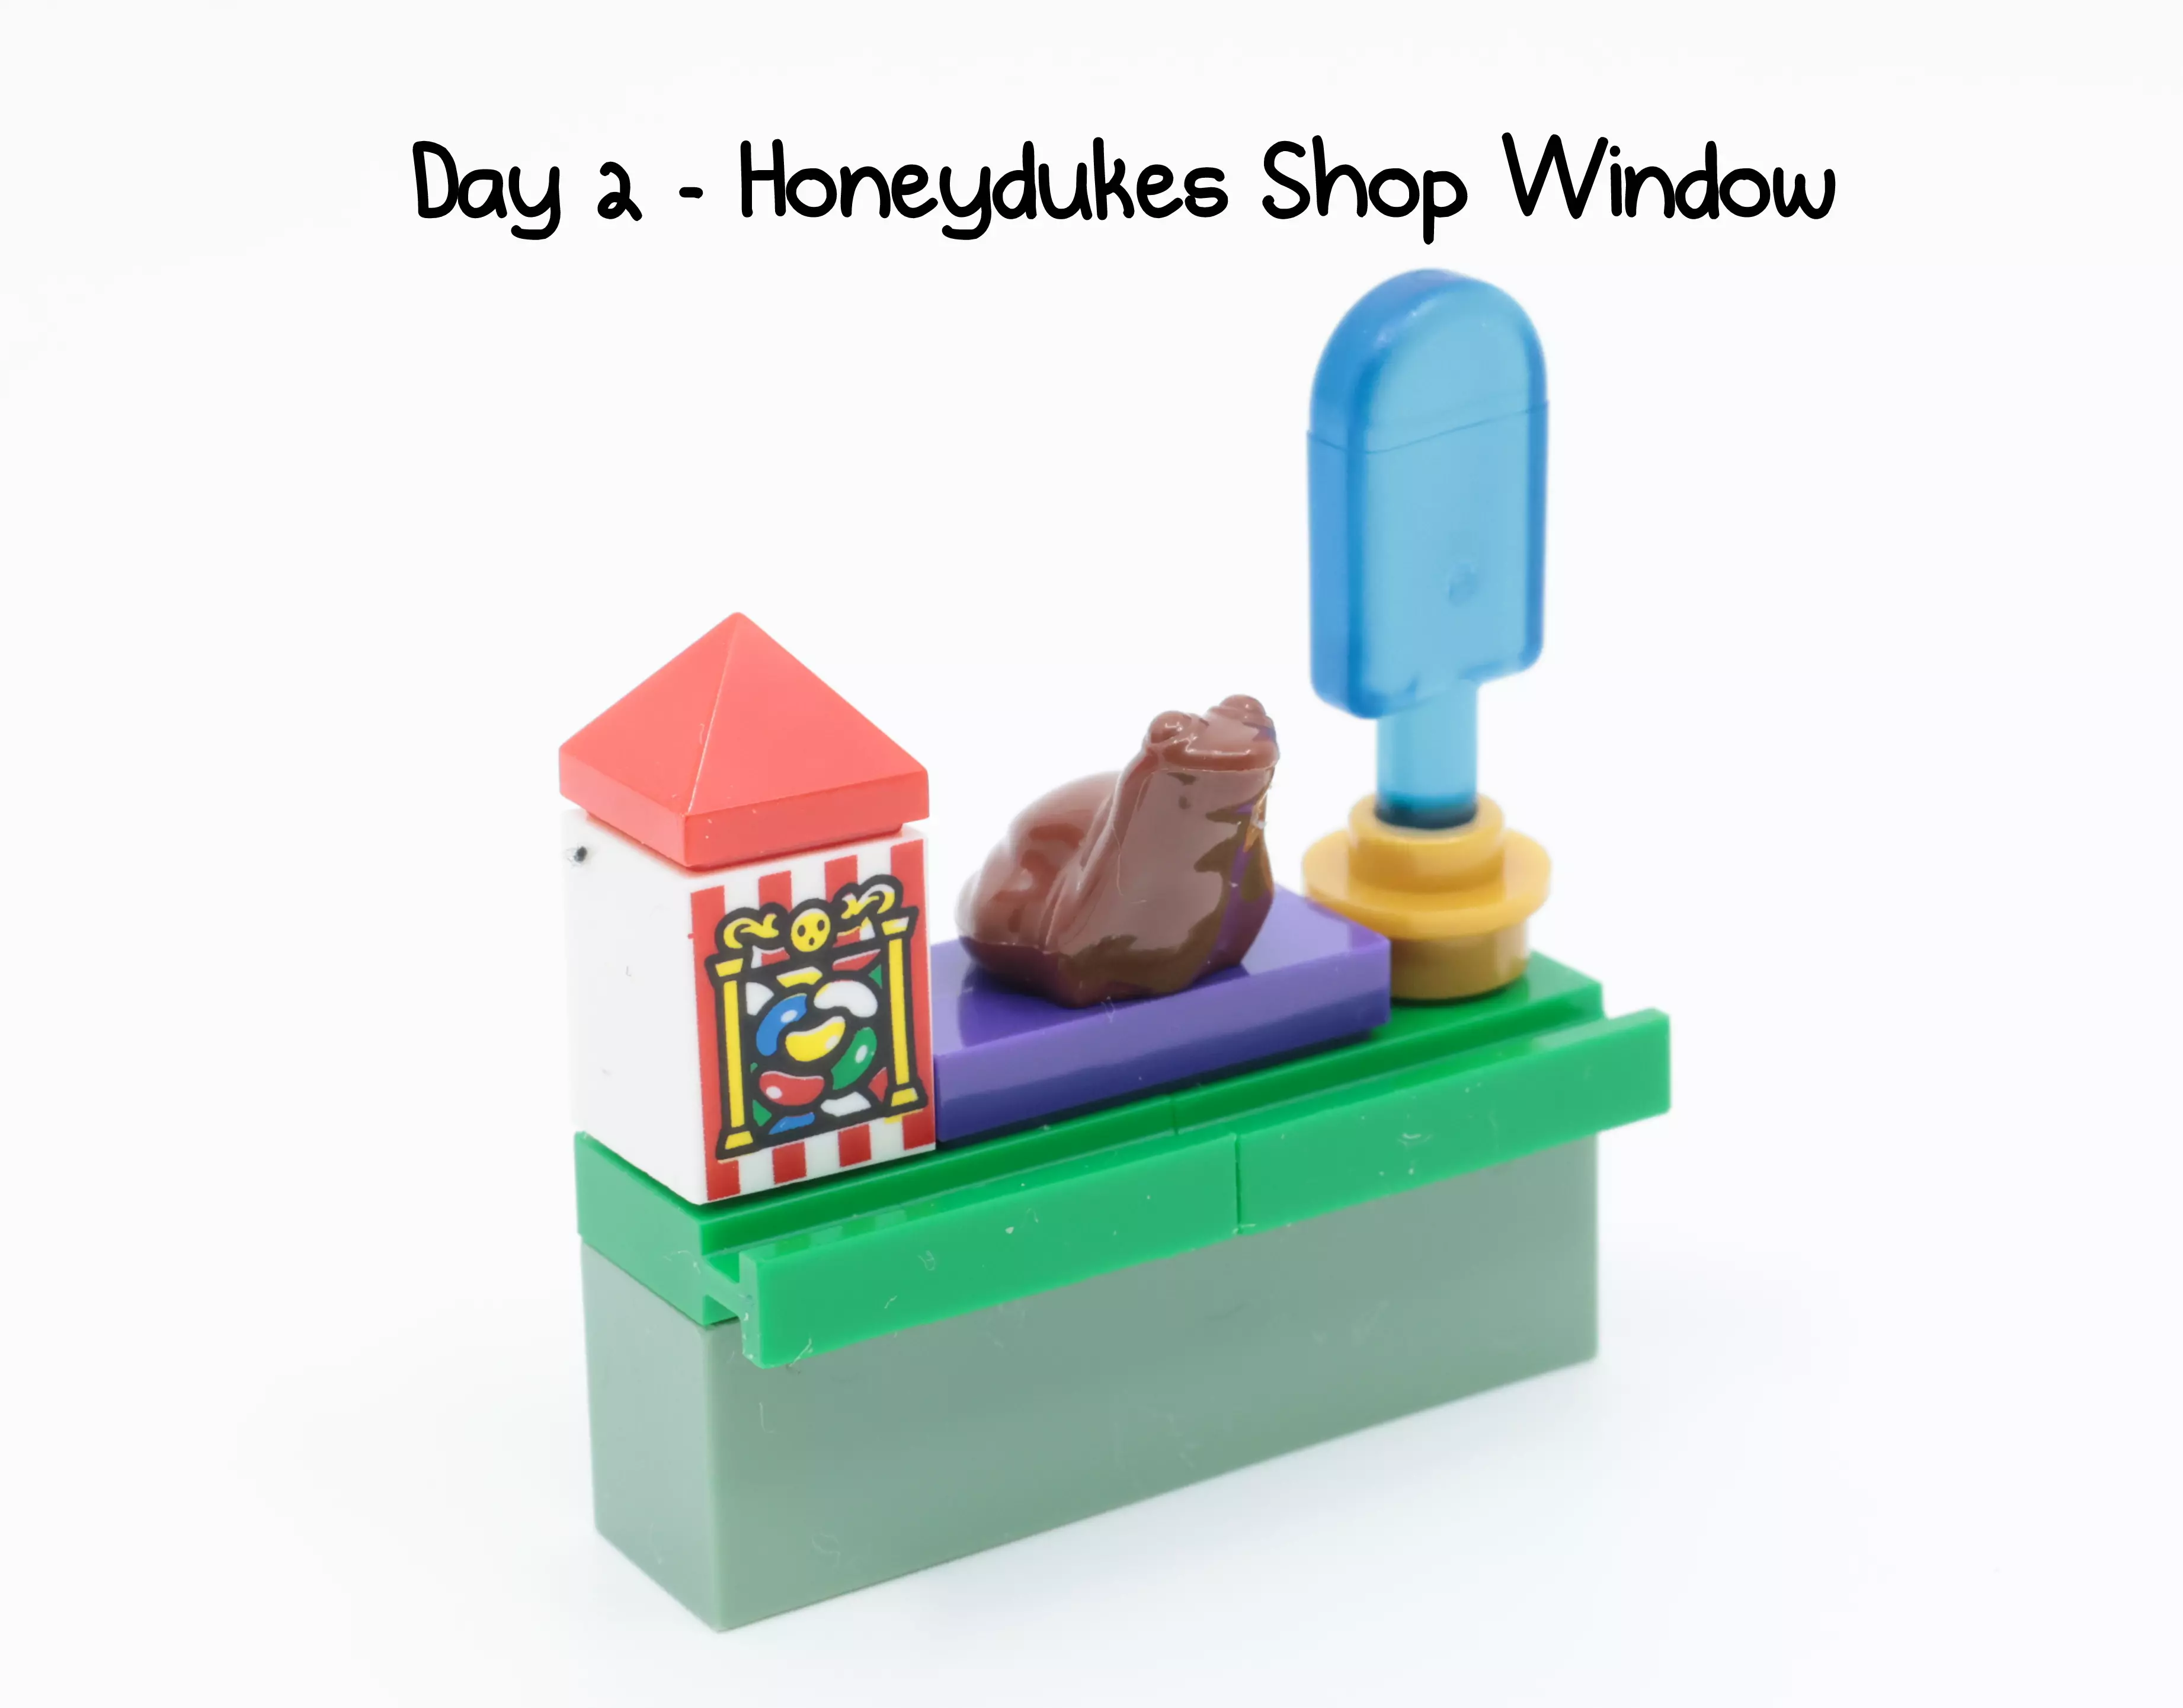 Honeydukes Shop Window